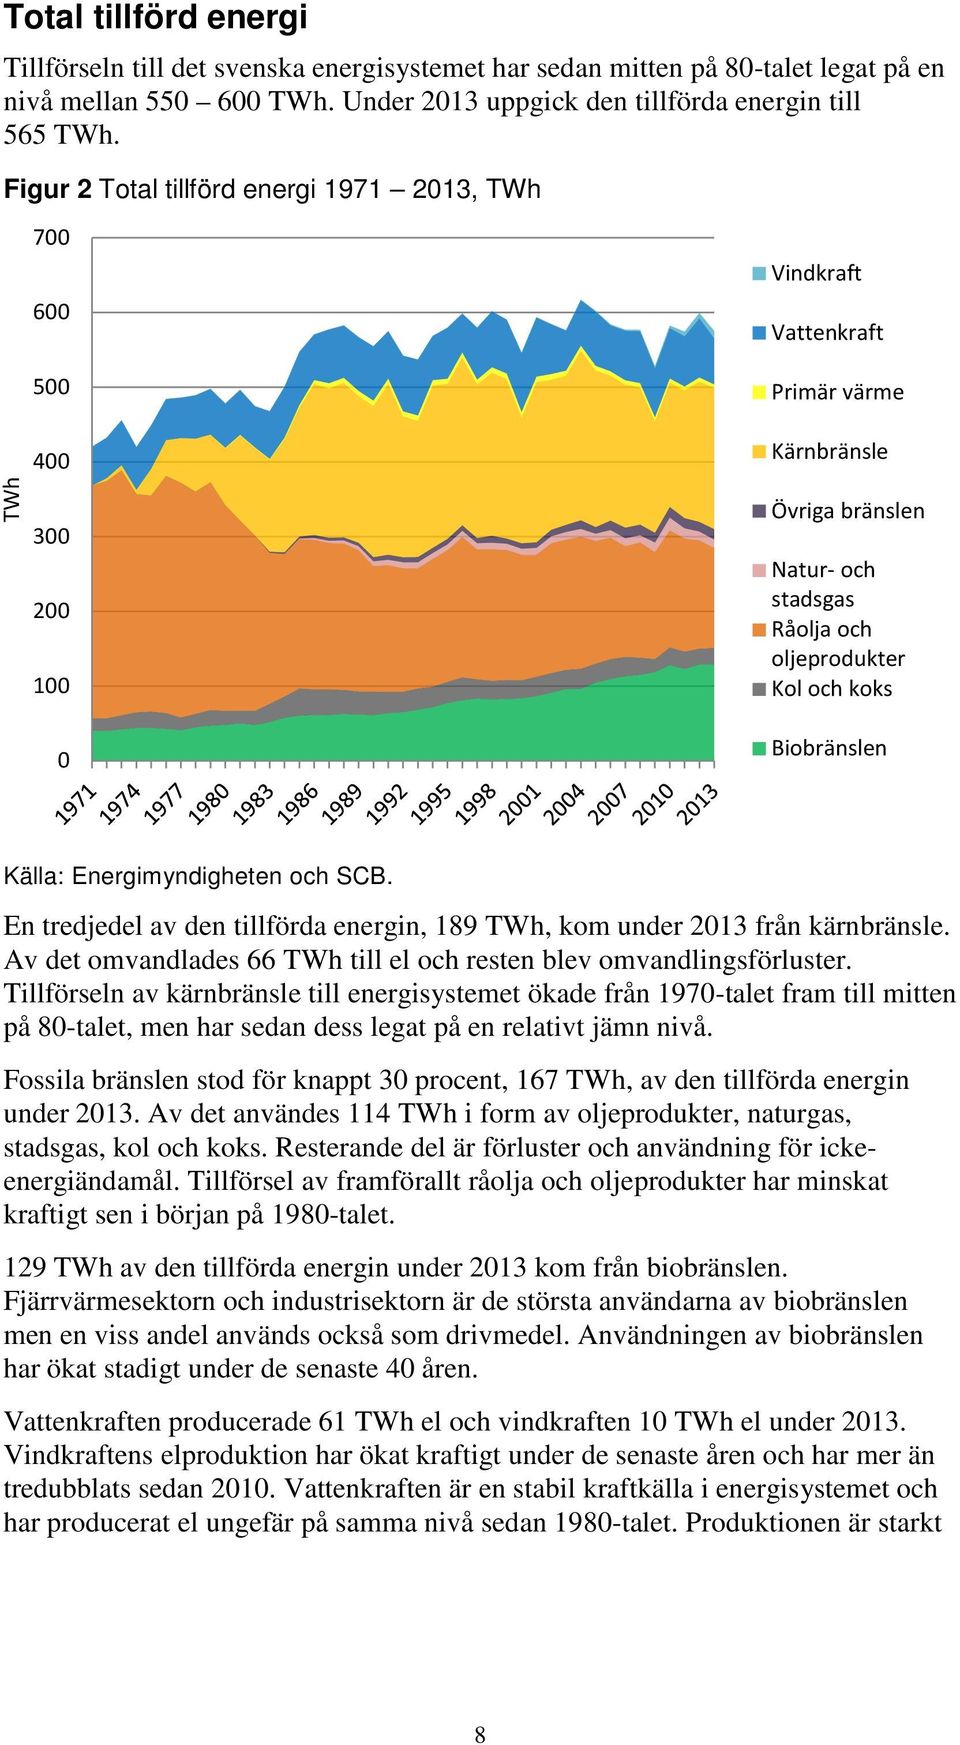 Biobränslen Källa: Energimyndigheten och SCB. En tredjedel av den tillförda energin, 189 TWh, kom under 2013 från kärnbränsle. Av det omvandlades 66 TWh till el och resten blev omvandlingsförluster.